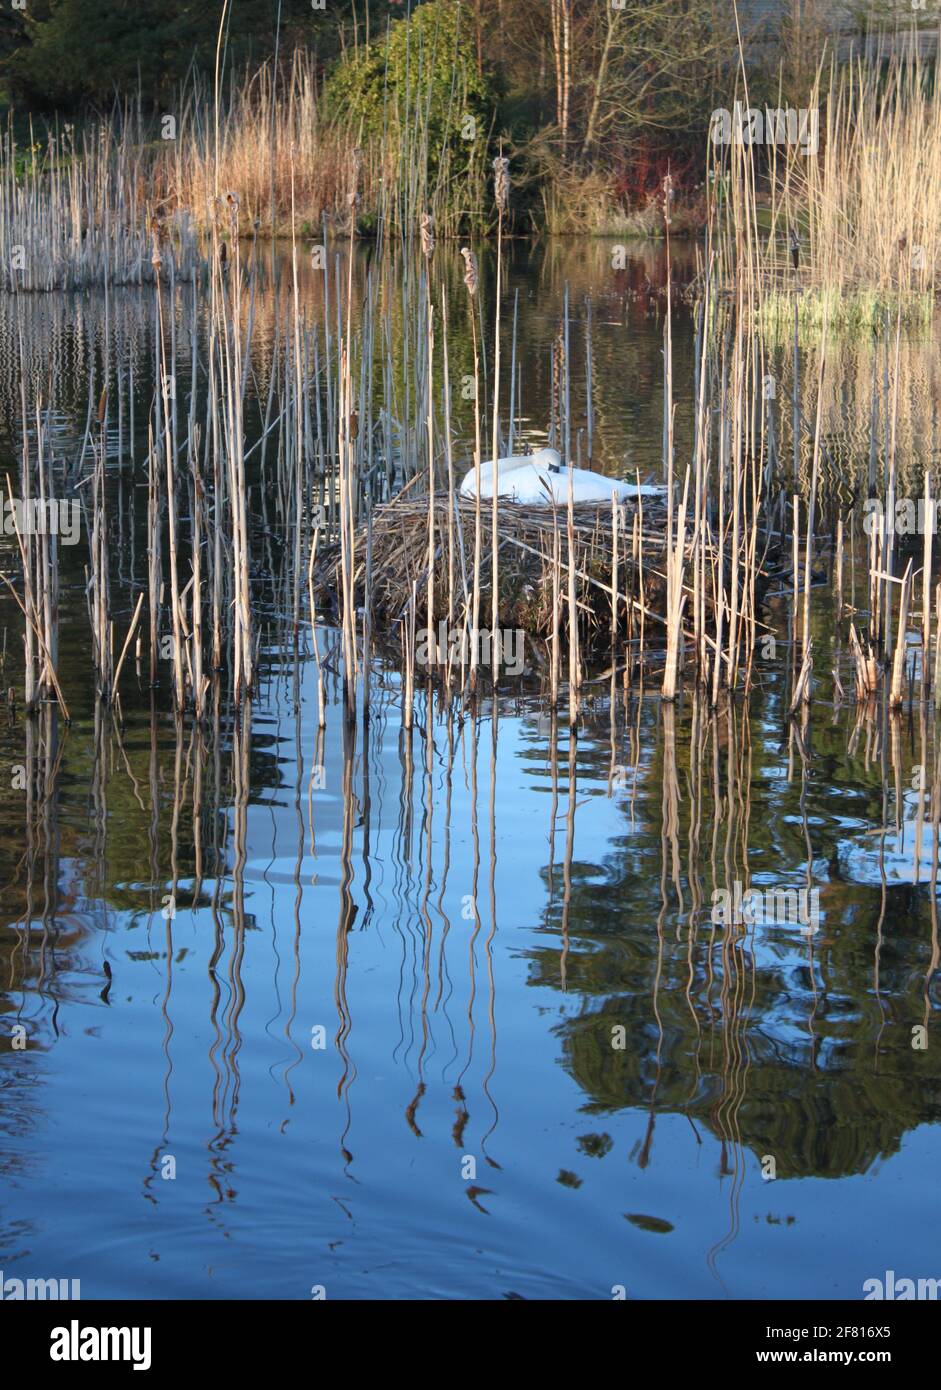 Mute cigni nidificanti sul lago scozzese in un ambiente urbano. Cigno bianco annidato tra le canne del lago durante la primavera. Animali selvatici catturati in primavera. Foto Stock